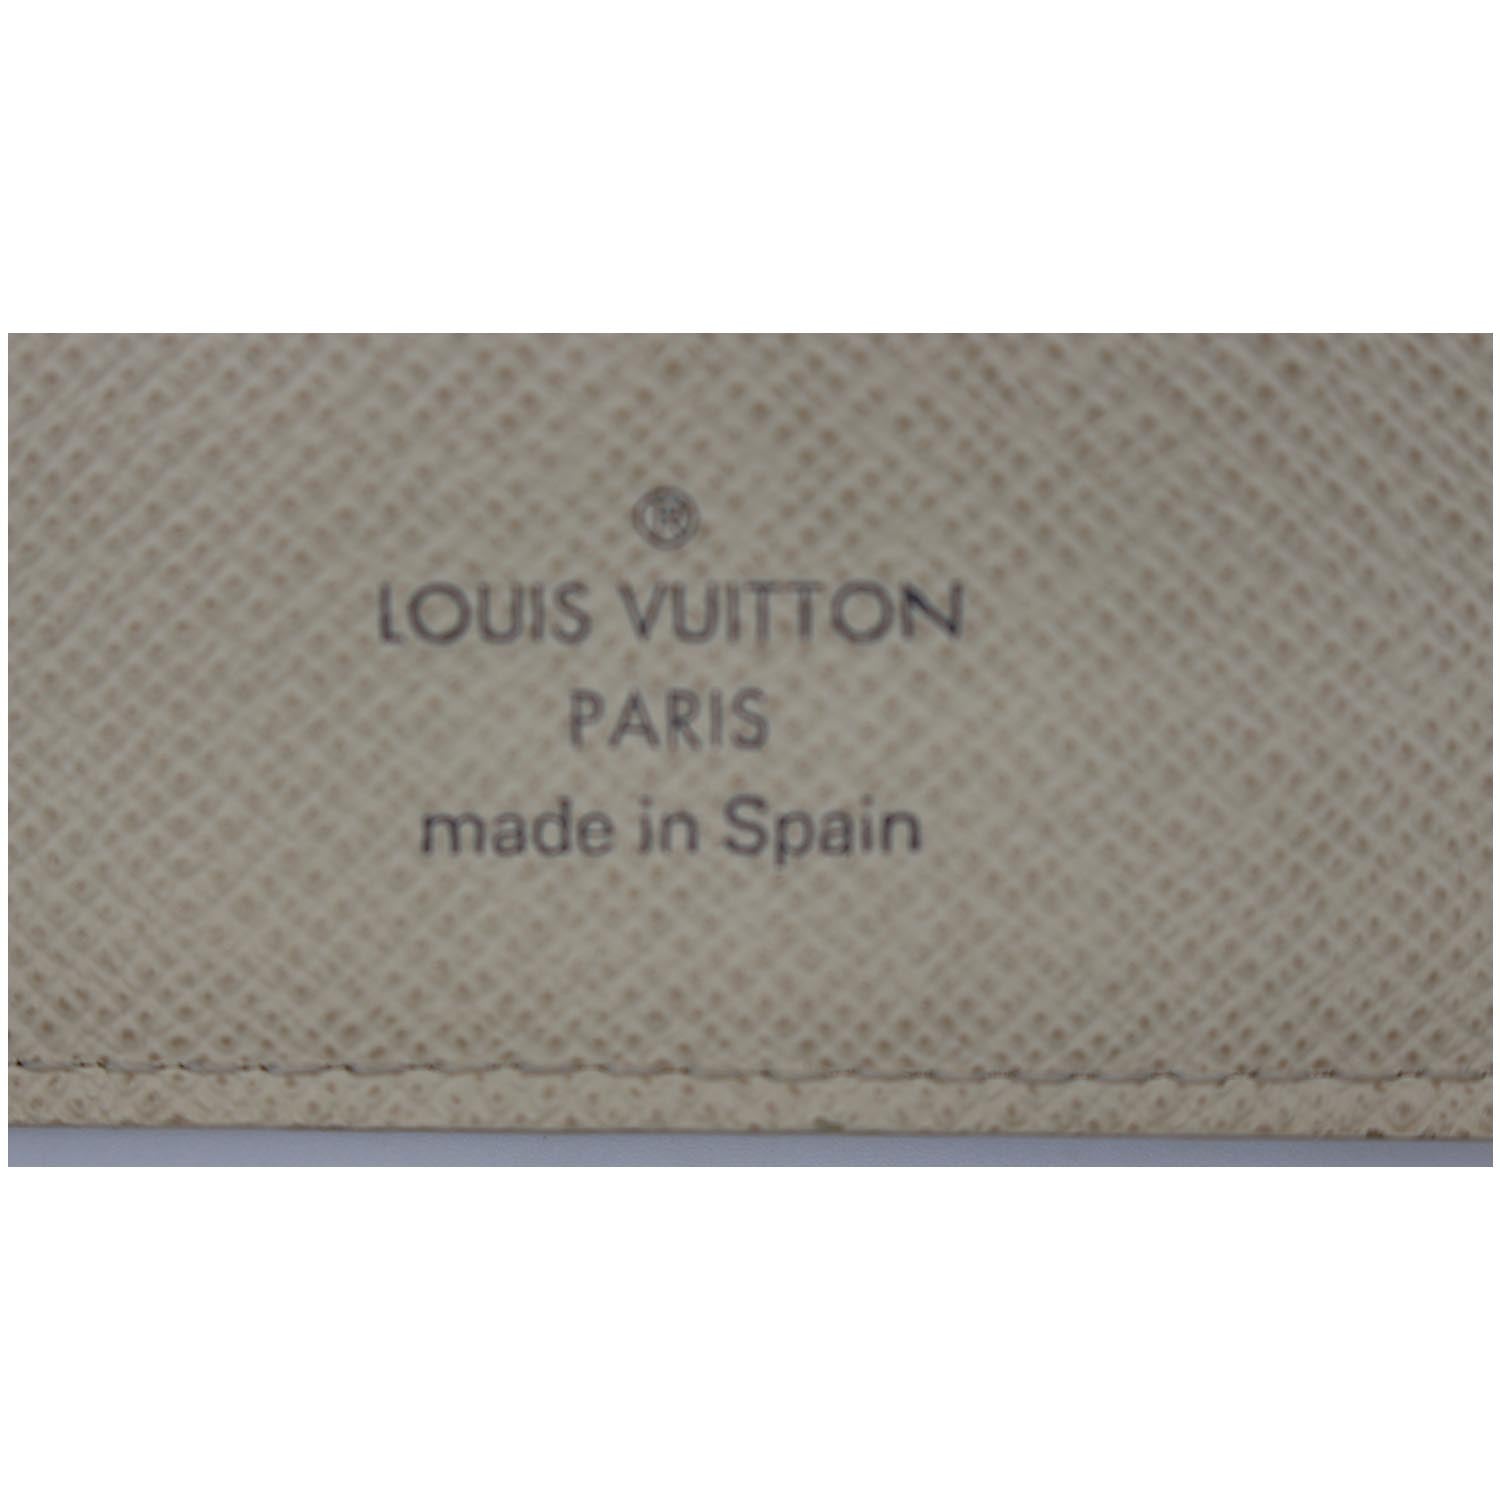 Authentic Louis Vuitton Damier Azur Canvas Leather Insolite Wallet CA4192